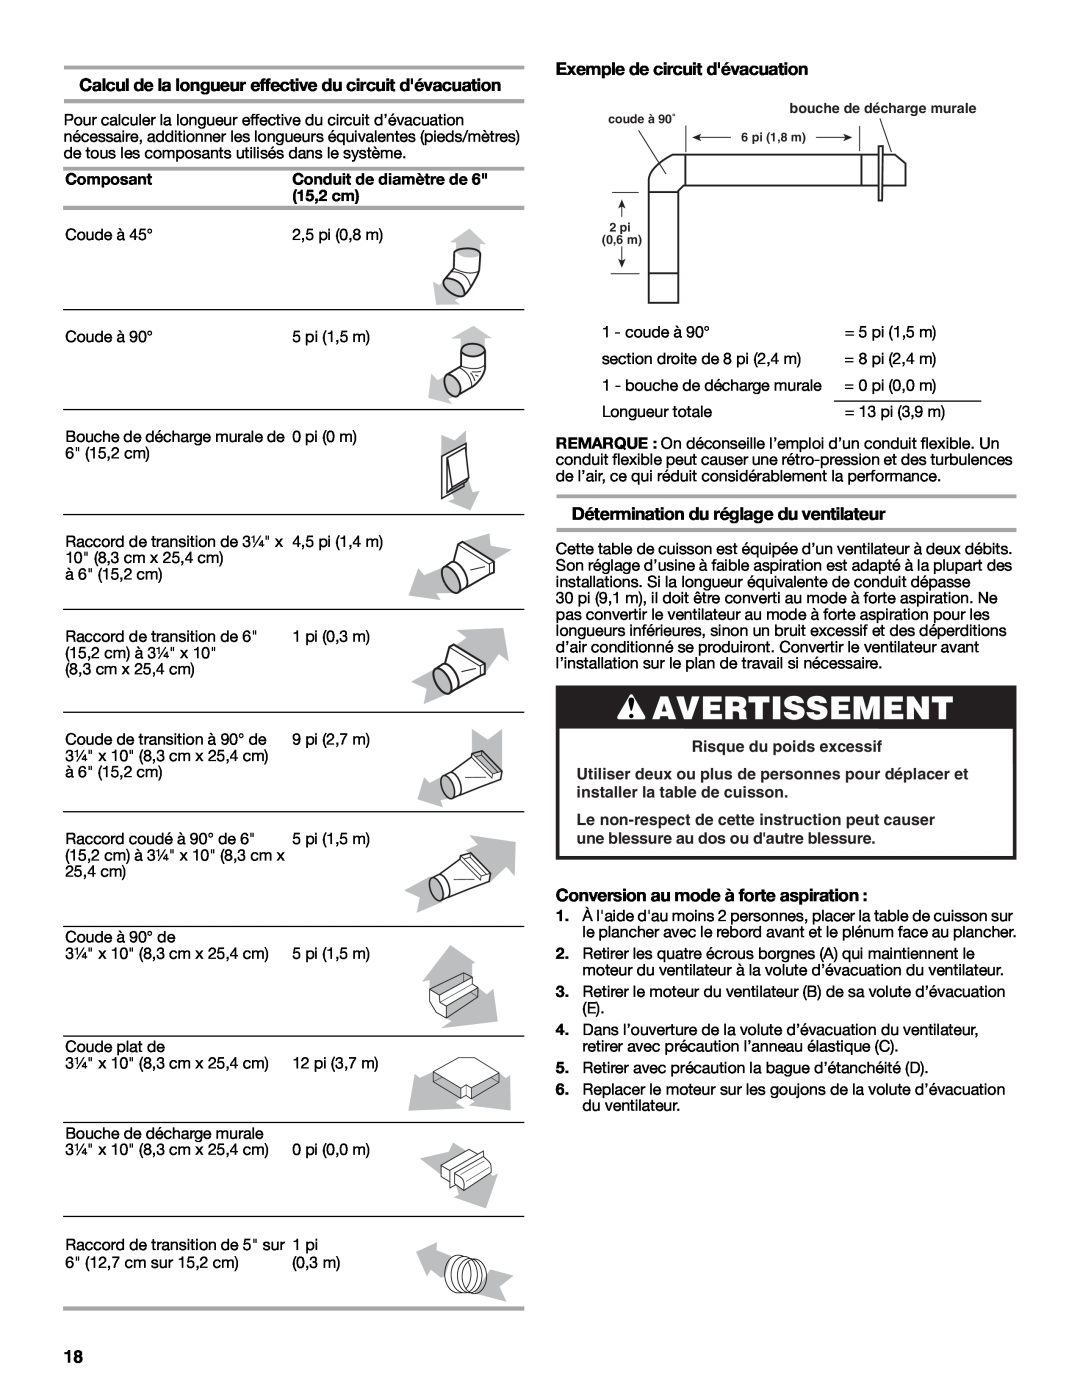 Jenn-Air W10298937A Avertissement, Exemple de circuit dévacuation, Détermination du réglage du ventilateur 